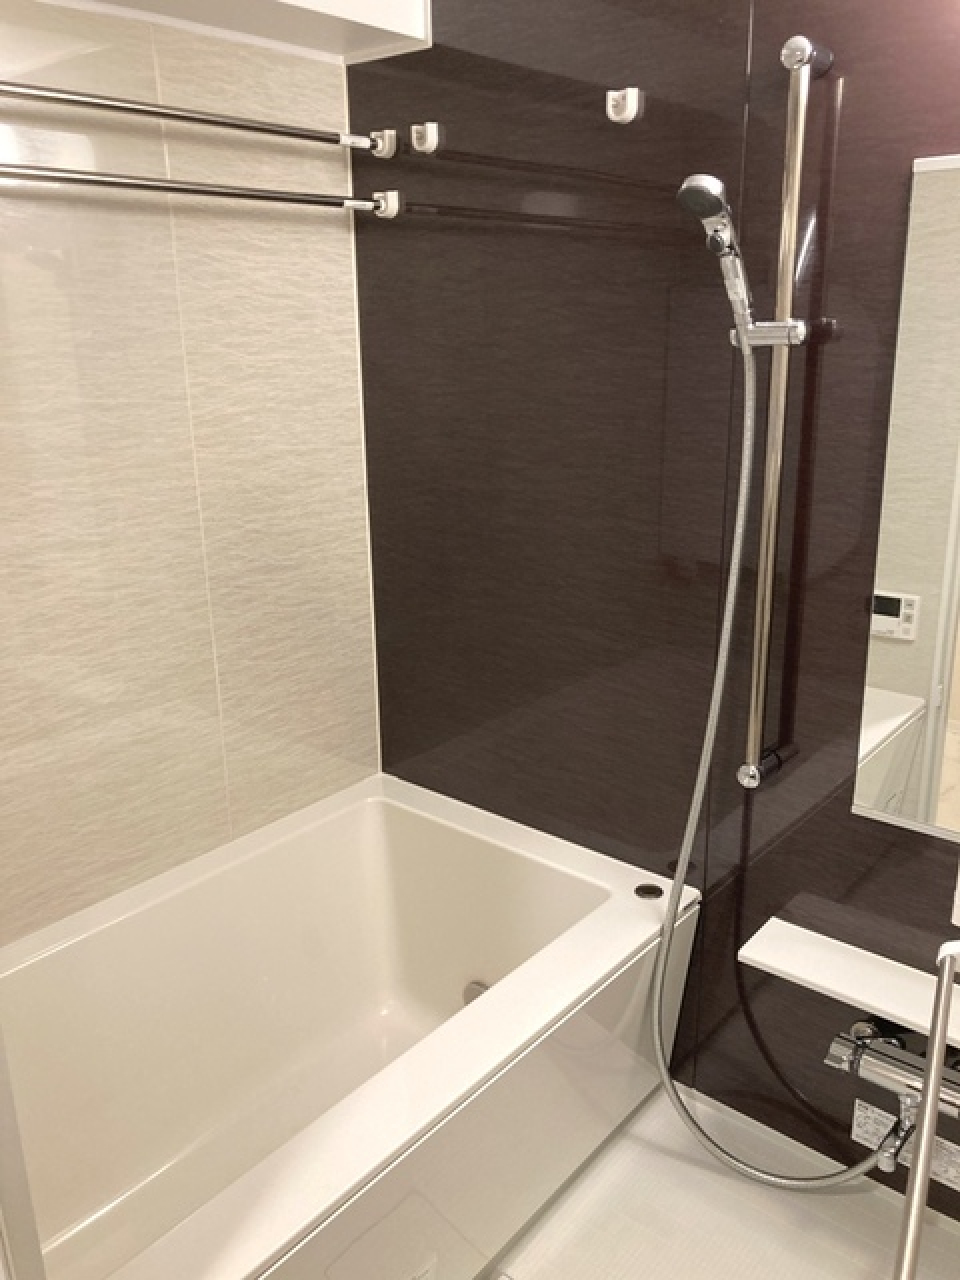 シャワーの高さが調整出来るバスルームです。
※写真は同タイプ住戸です。